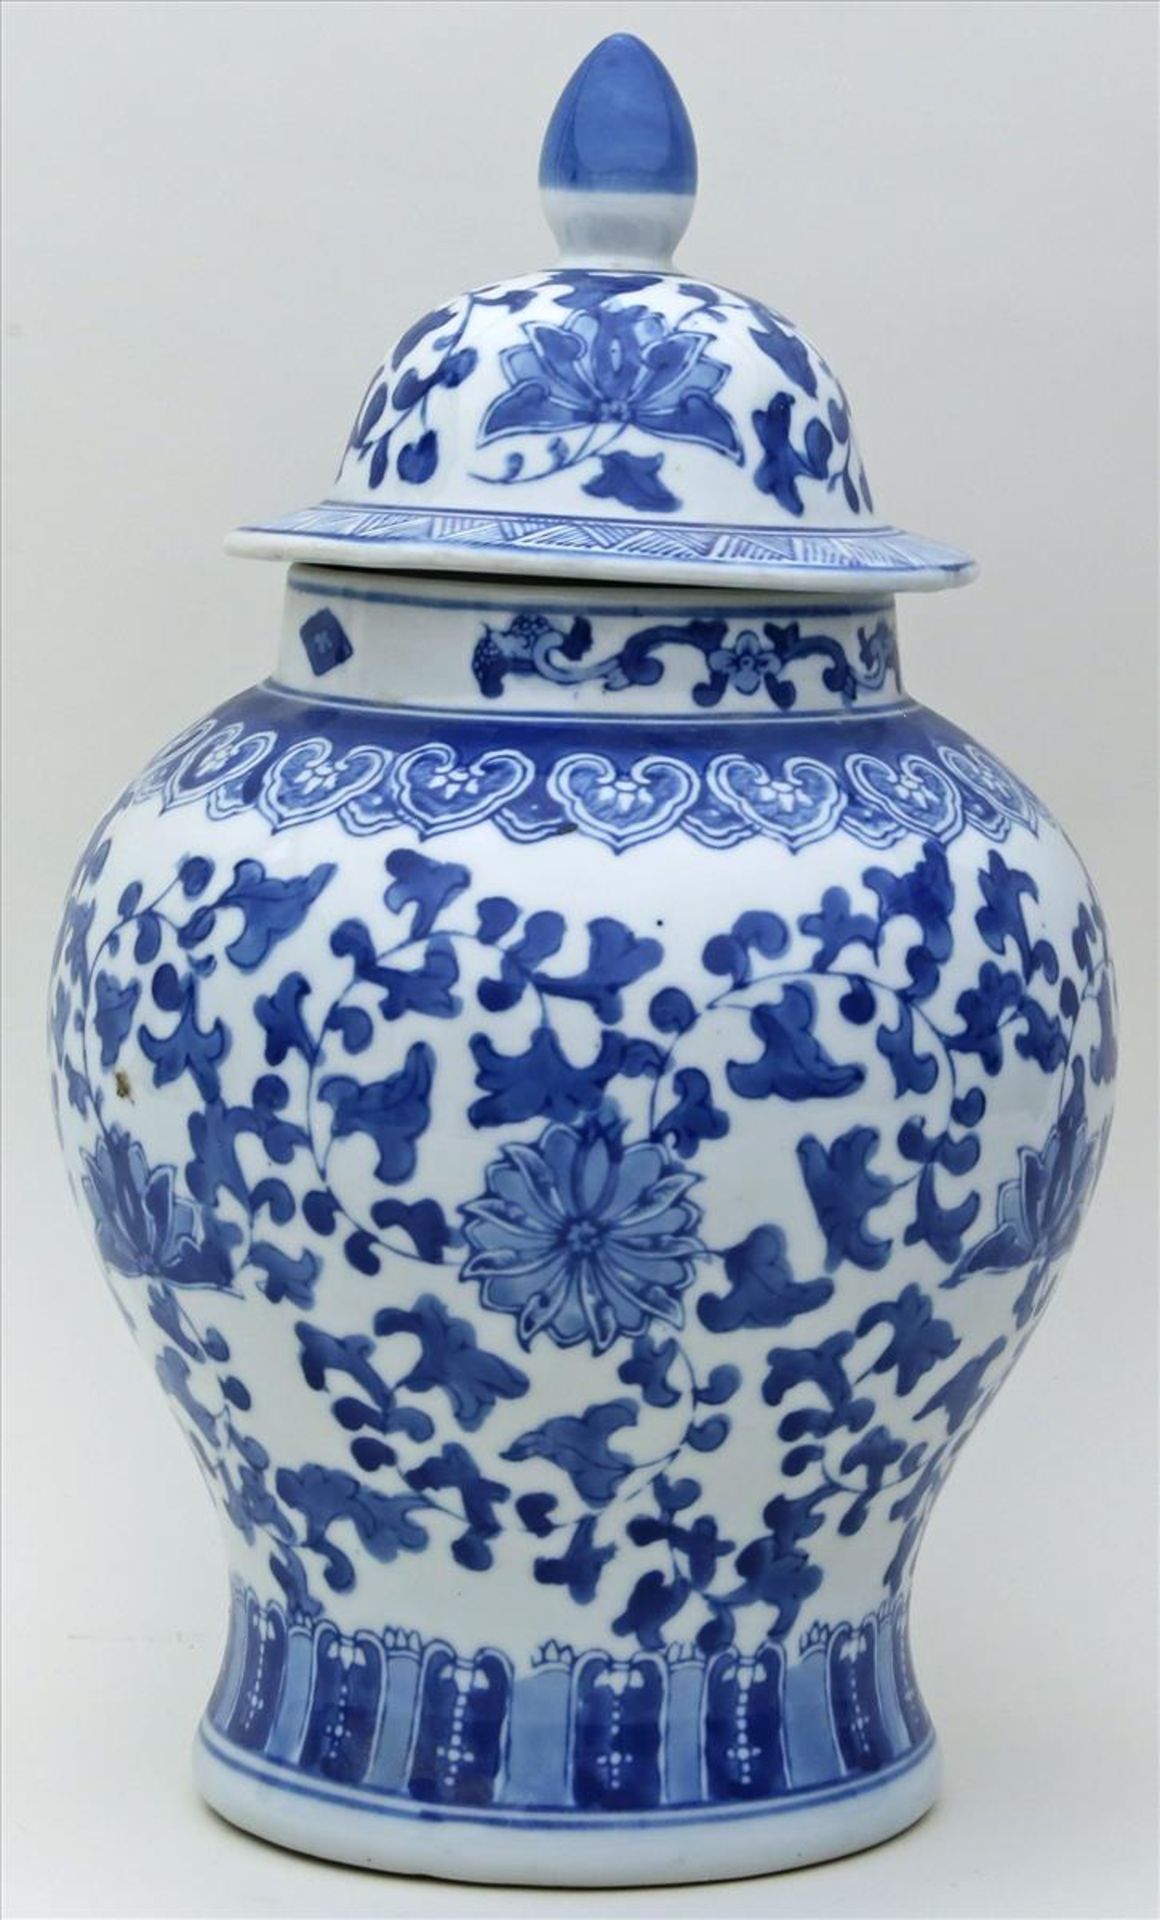 Deckelvase.Porzellan. Umlaufend florale und Ornamentmalerei in Unterglasurblau. China. H. 38 cm.